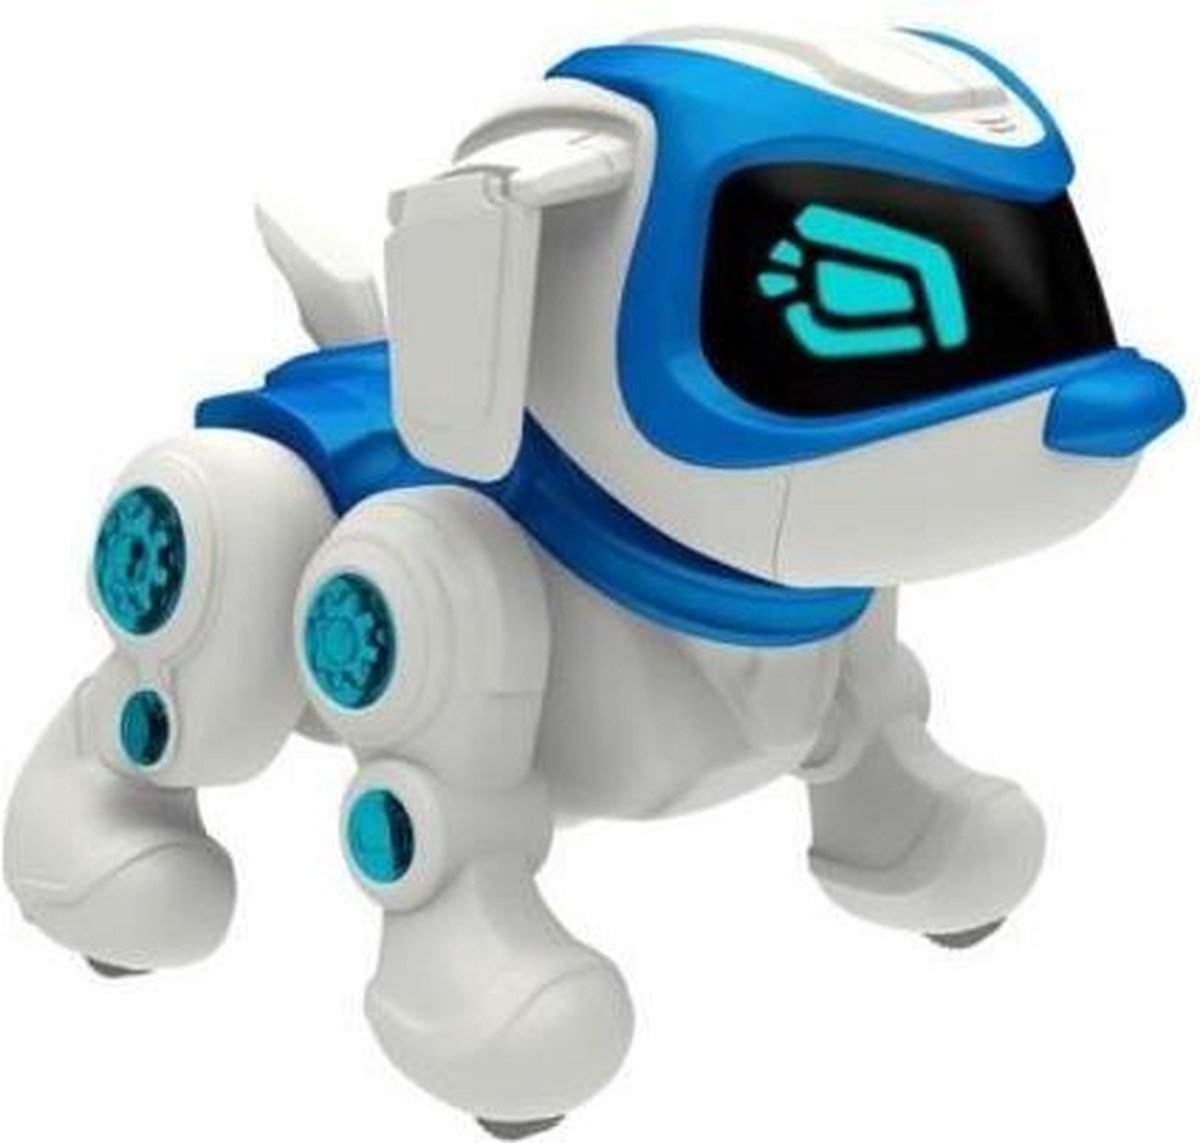 Teksta Robot Puppy 360 degrés | bol.com